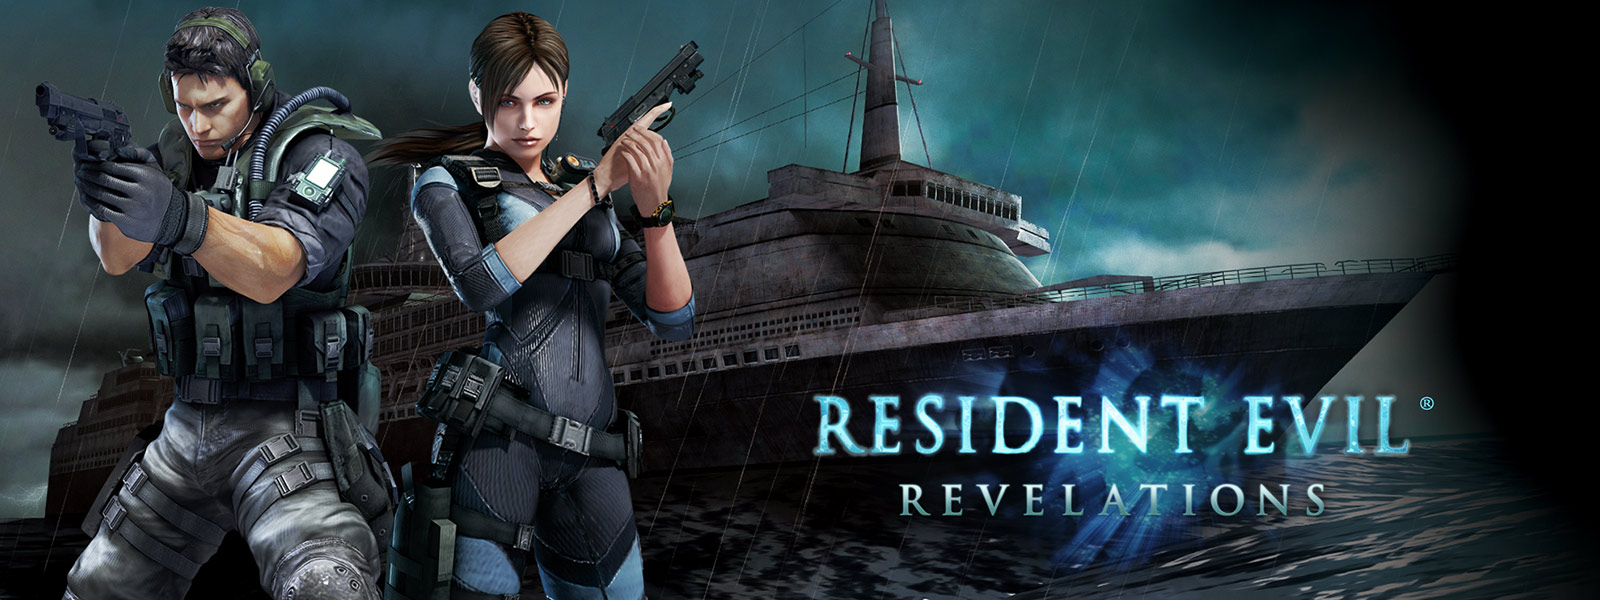 Resident Evil Revelations, dvě postavy držící pistole před strašidelně vypadající výletní lodí